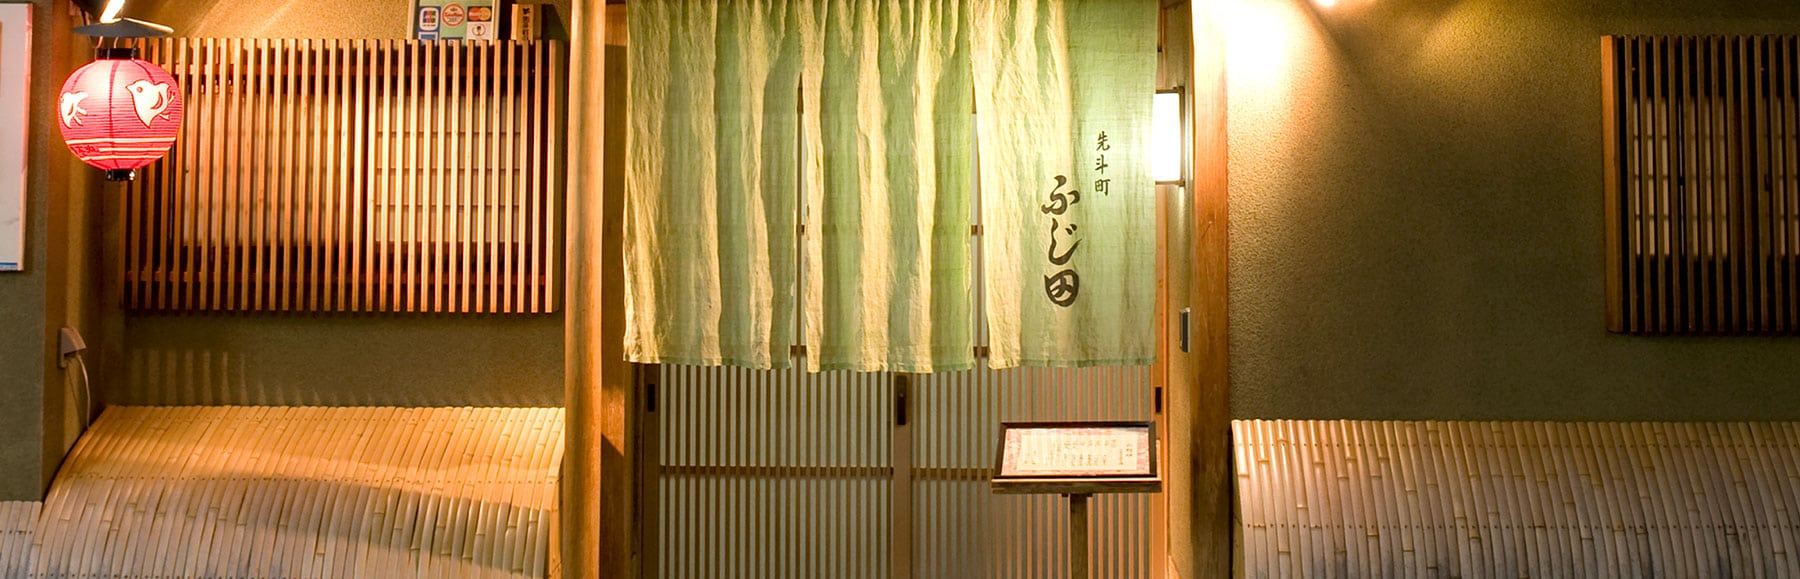 京都花街先斗町居酒屋街美食整理|燒肉、炸牛排、壽司